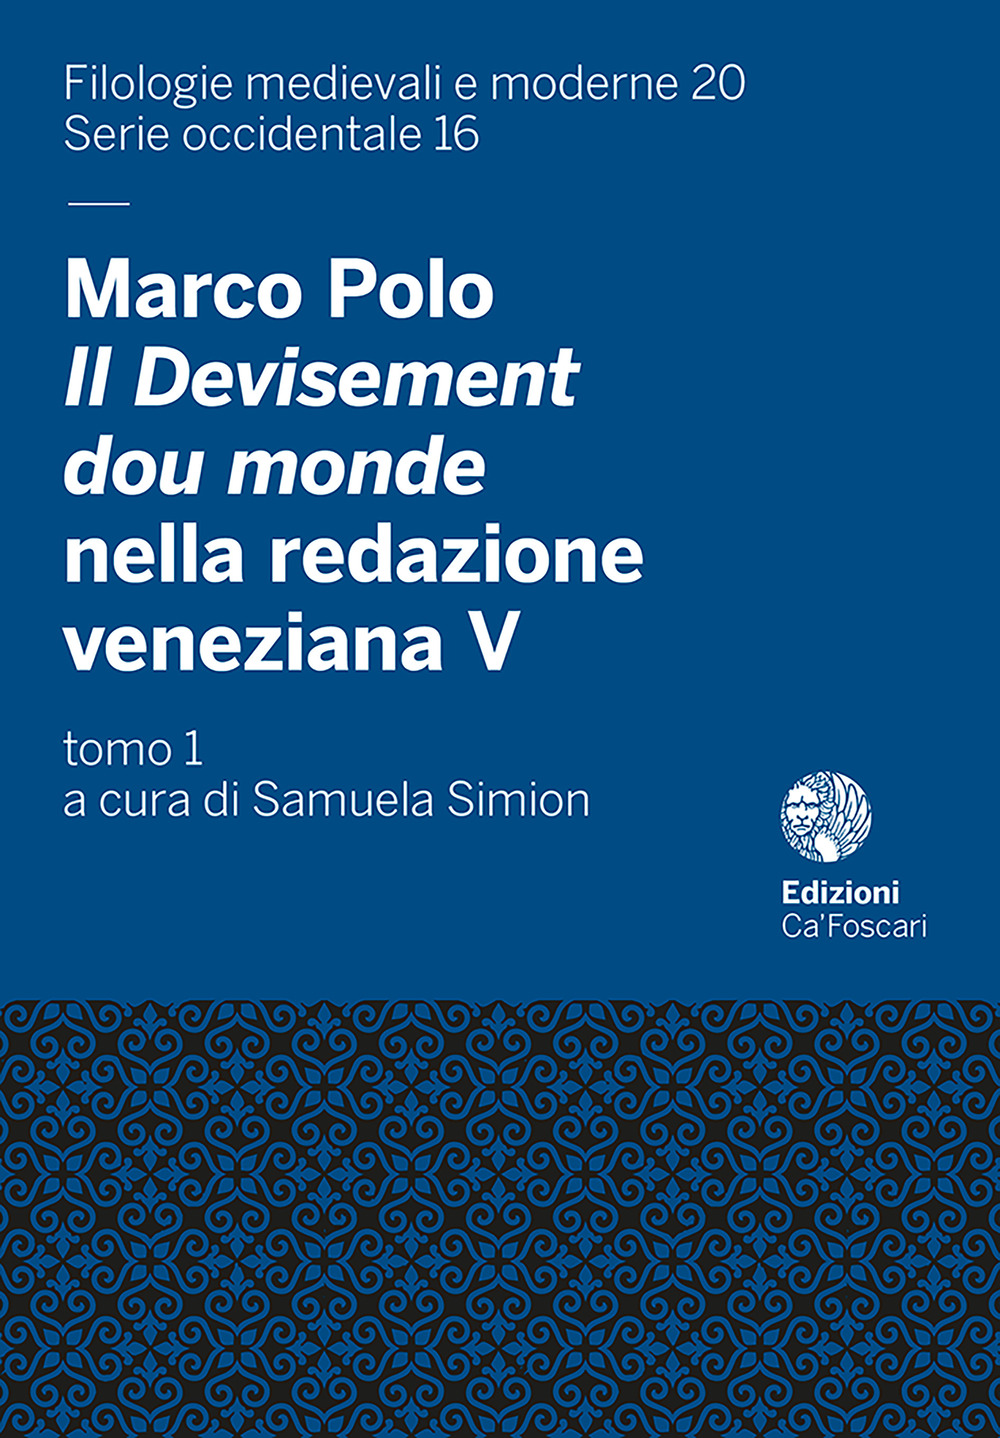 Marco Polo, il Devisement dou Monde nella redazione veneziana V (cod. Hamilton 424 della Staatsbibliothek di Berlino)